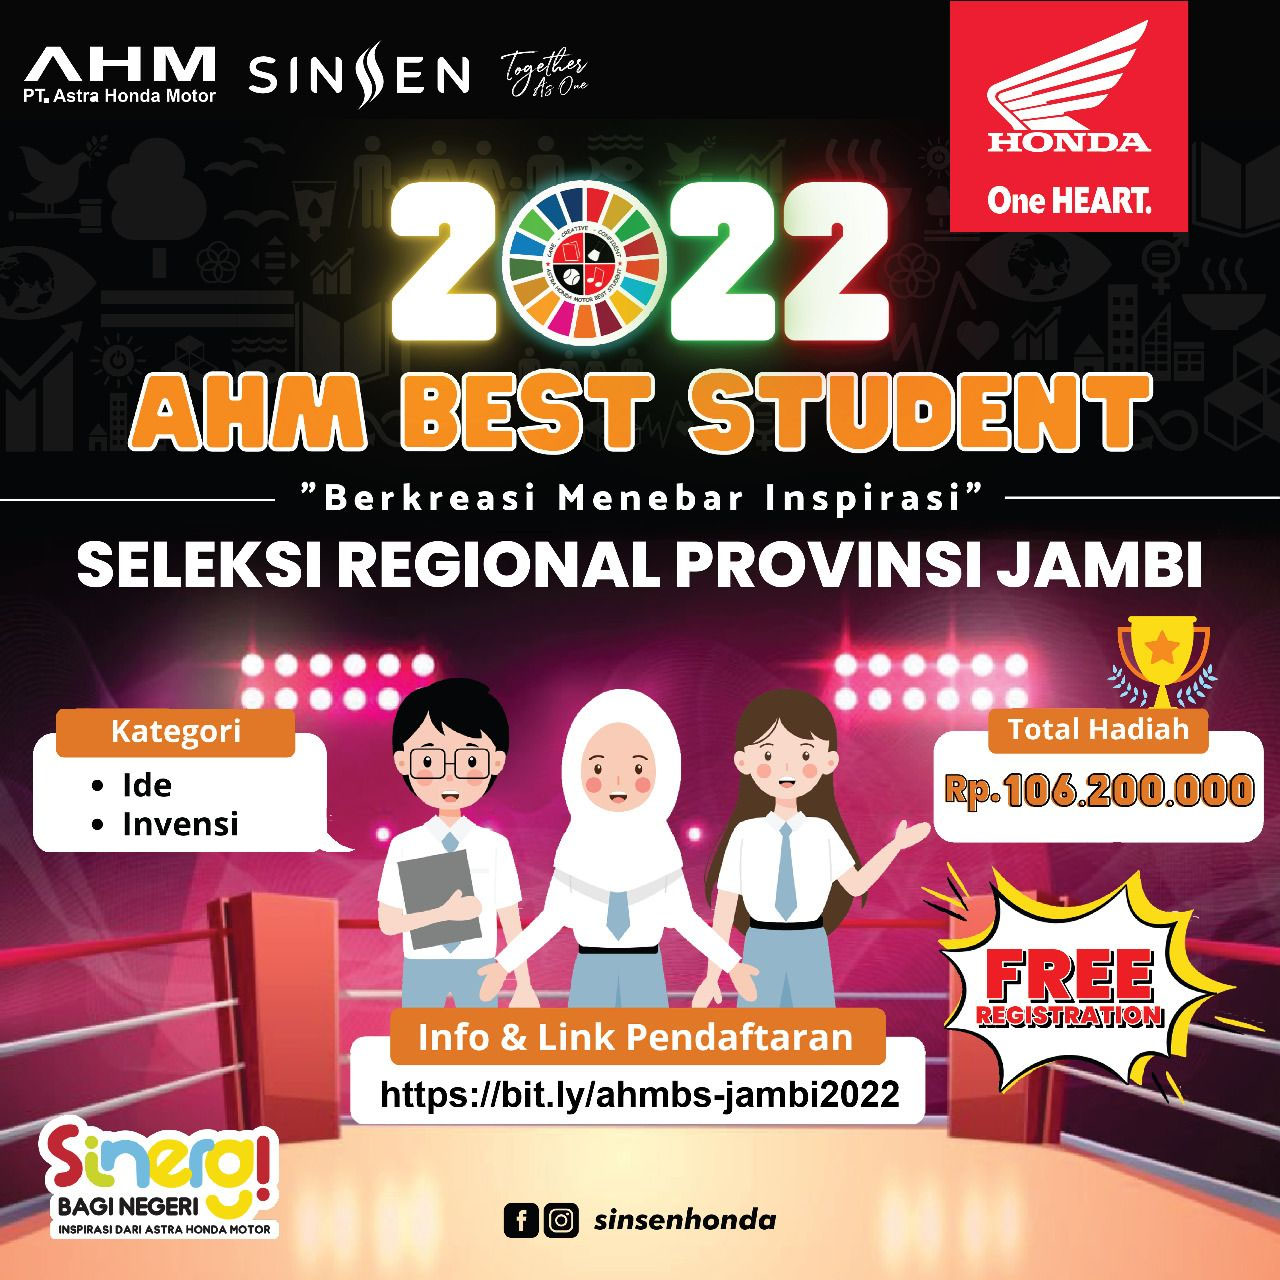 Rebut Hadiah Beasiswa Total Ratusan Juta Rupiah, Sinsen Gelar AHM Best Student Regional Jambi 2022 